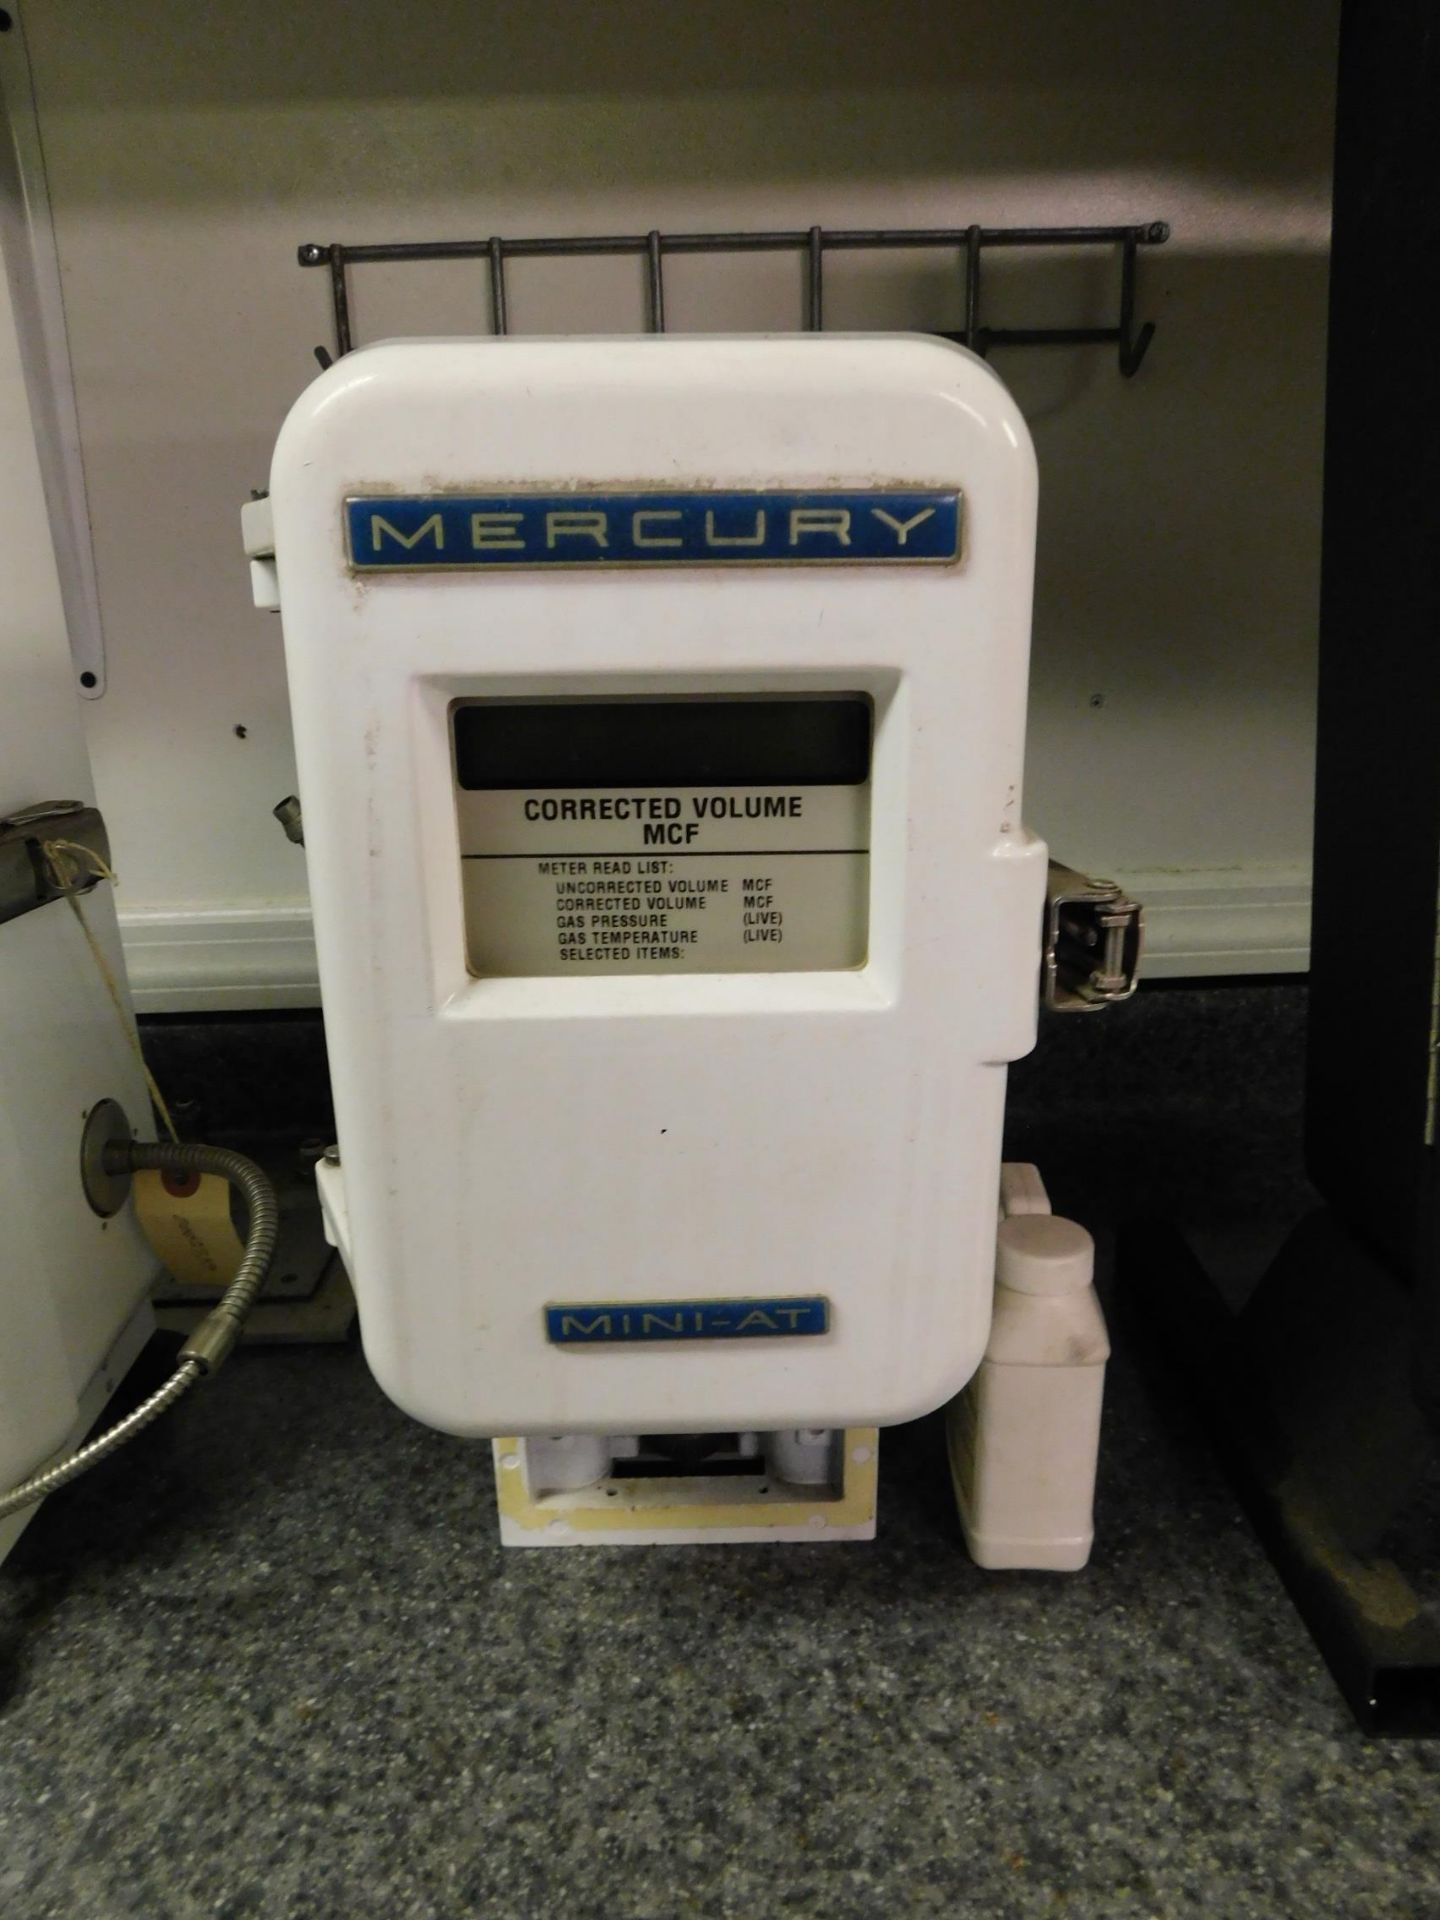 Mercury Instrument Mini AT Corrected Volume Meter